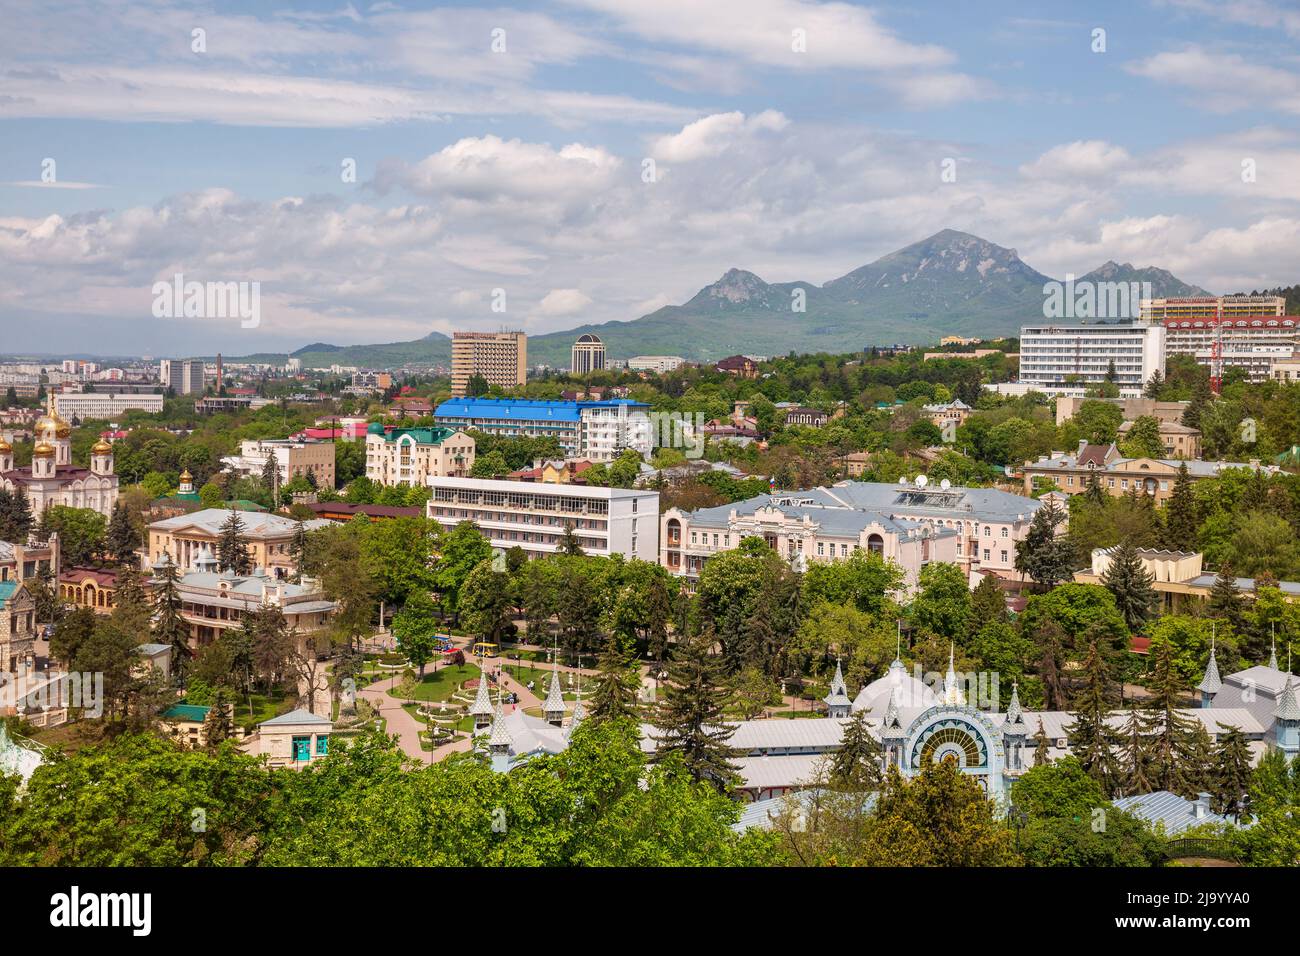 Vue aérienne de la ville balnéaire de Pyatigorsk et du mont Beshtau Banque D'Images